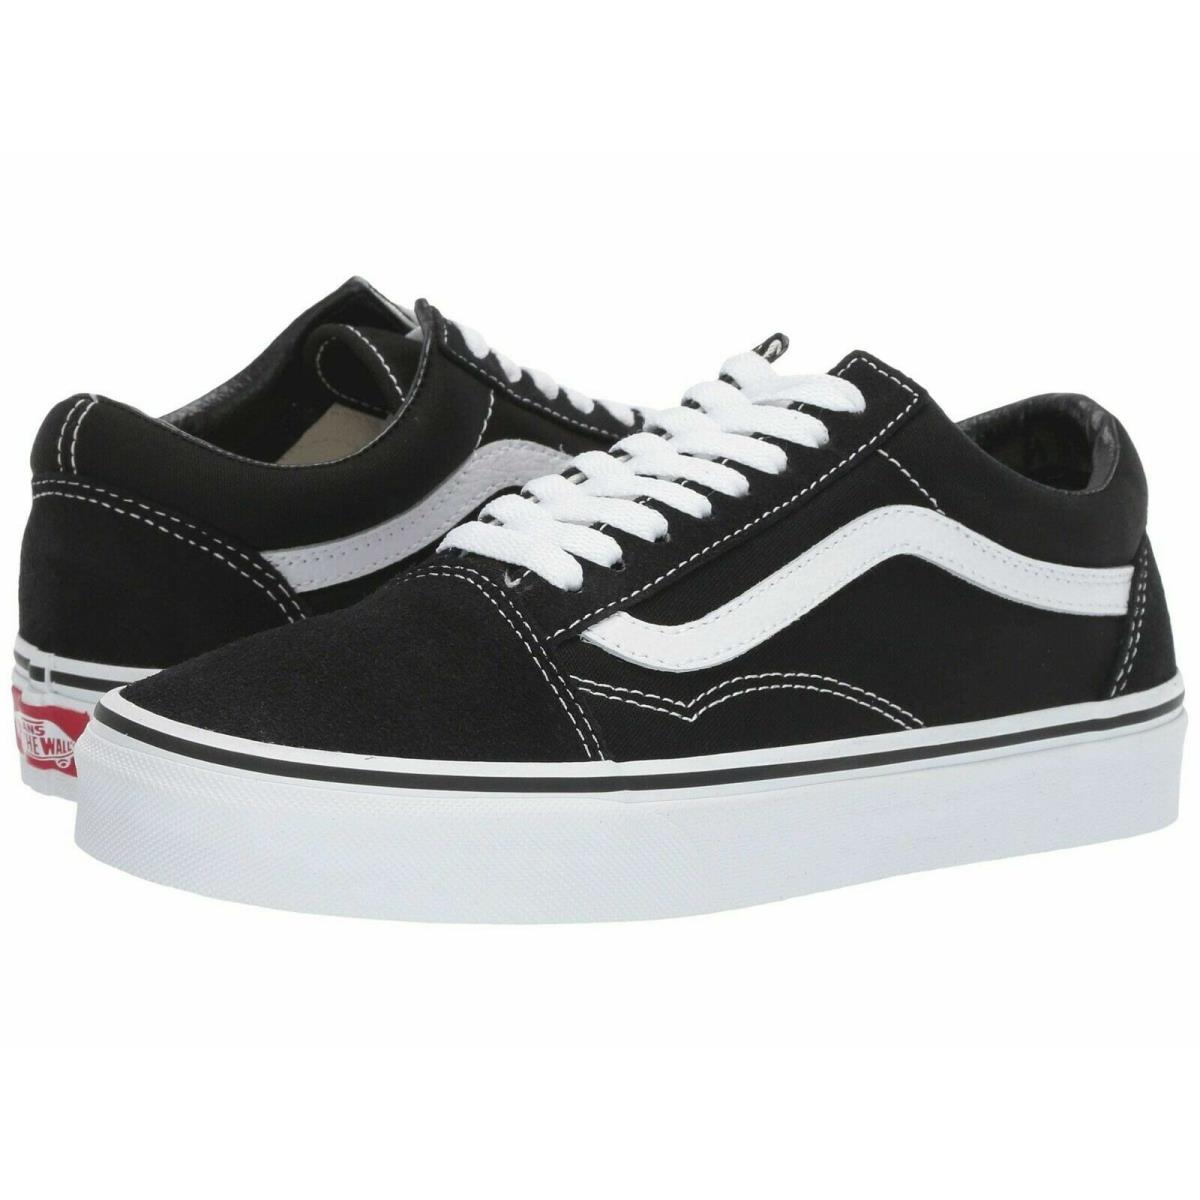 Vans Old Skool Skateboard Classic Black White Mens Womens Sneakers Tennis Shoes Black